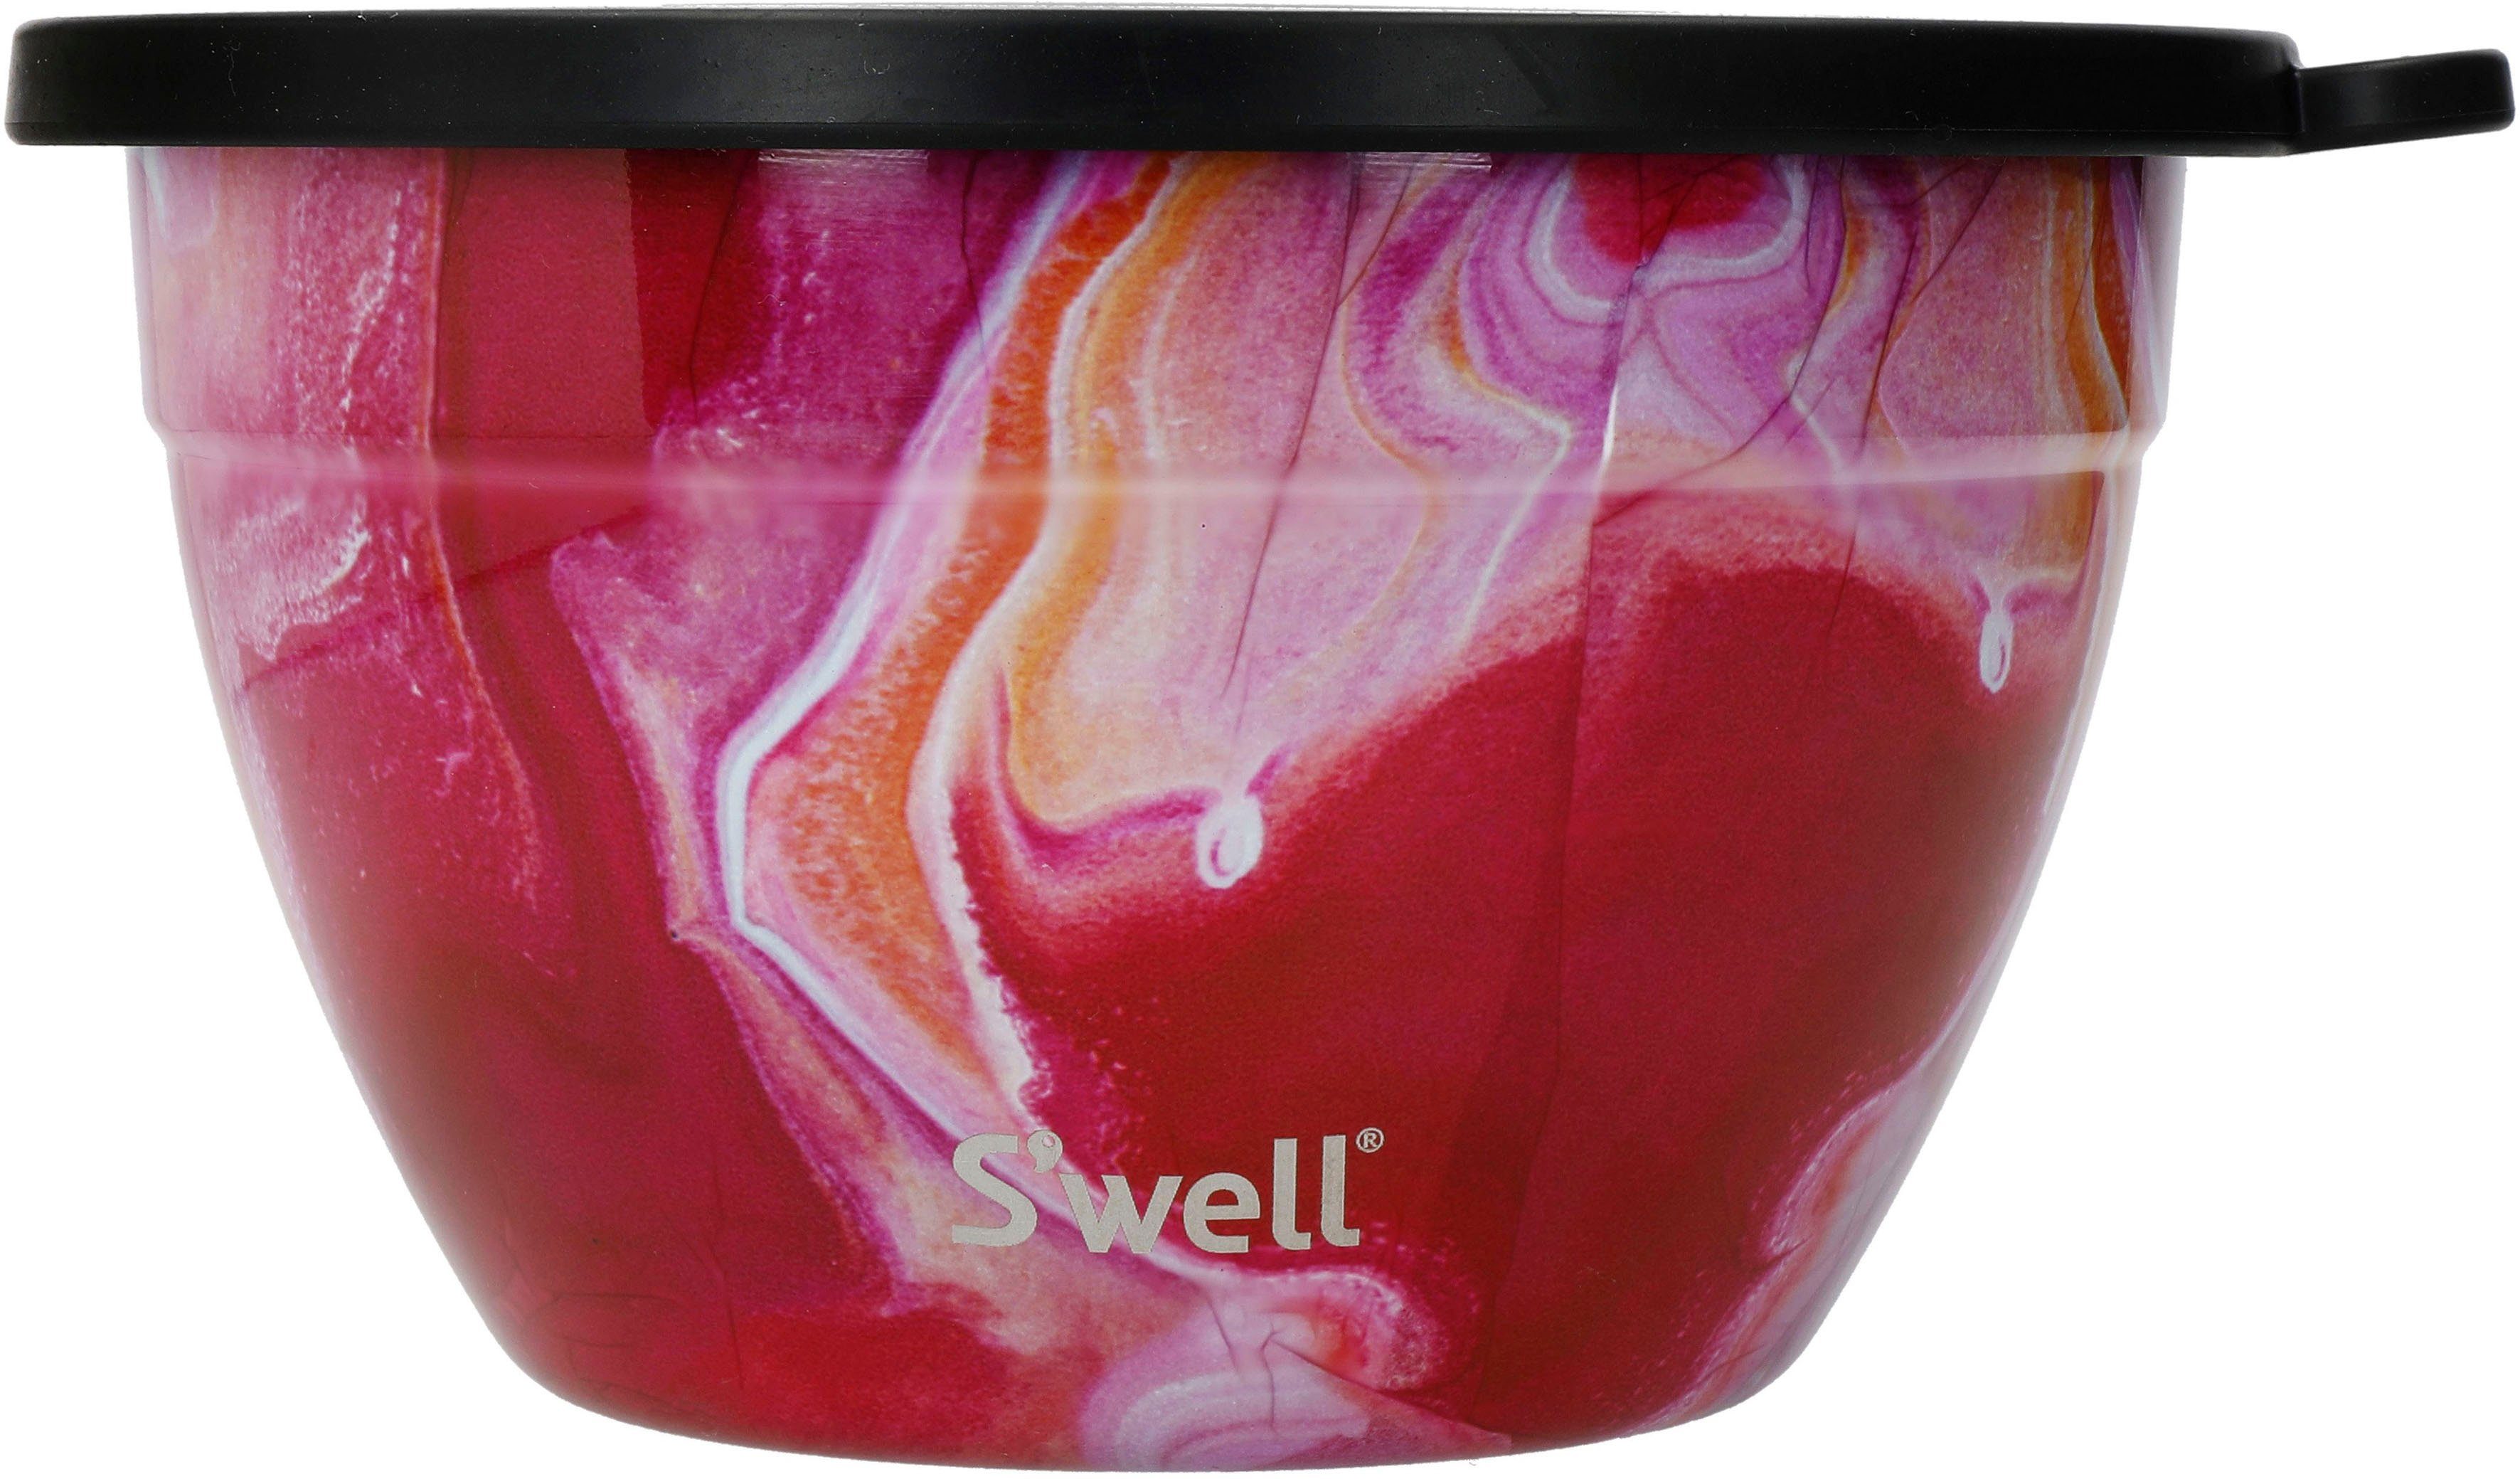 Kit, Therma-S'well®-Technologie vakuumisolierten Rose Calacatta S'well Bowl S'well Edelstahl, mit Agate (3-tlg), Außenschale Gold 1.9L, Salatschüssel Salad